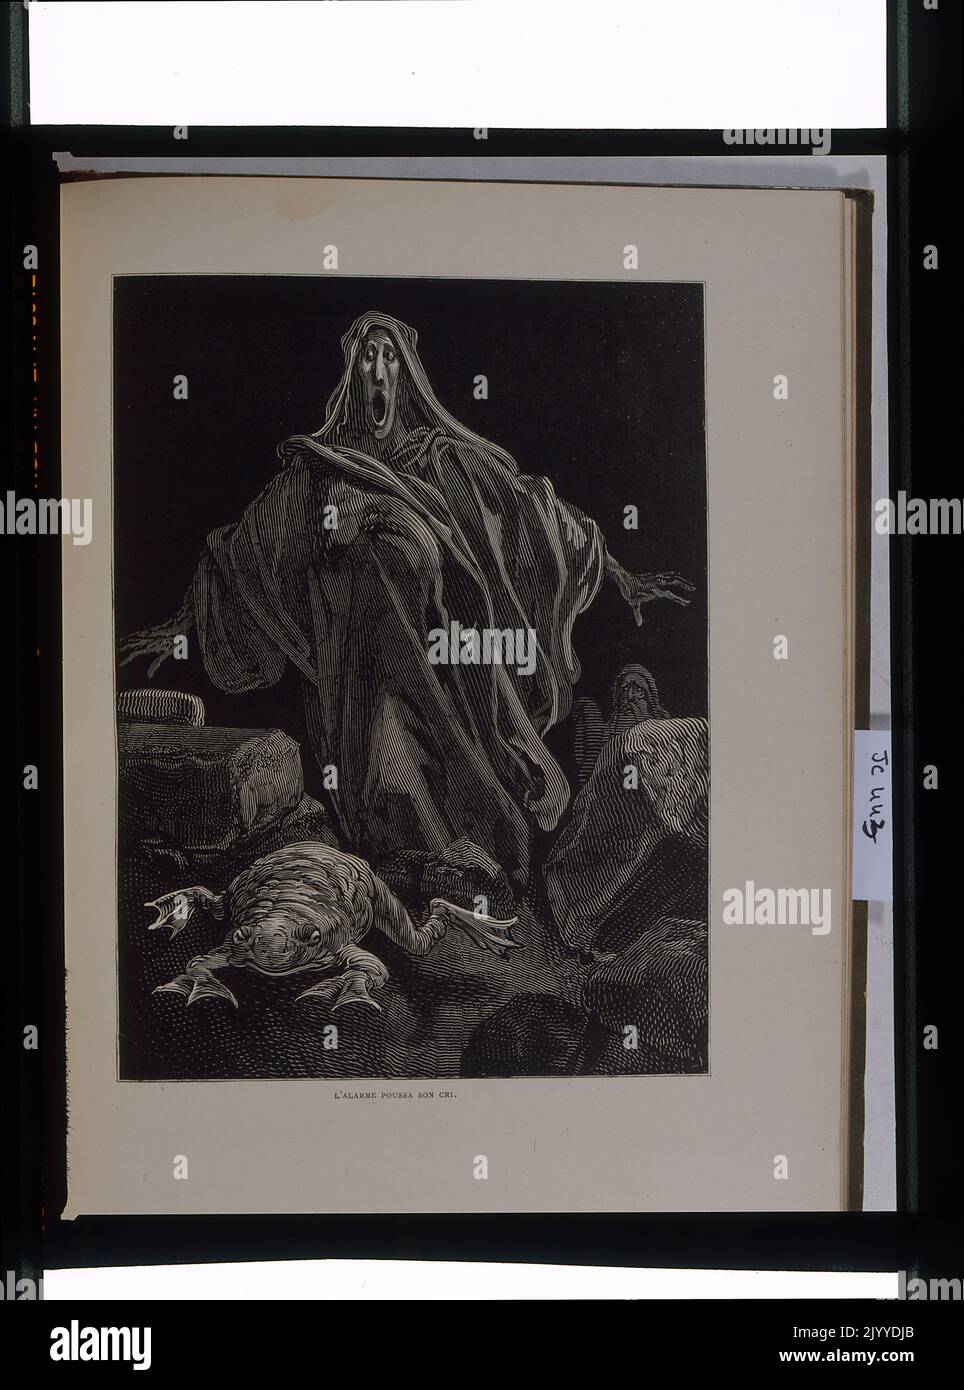 Gravur mit dem Titel „The Cry of Alarm“, in der eine ghoul-ähnliche Figur auf der Jagd nach einer Kröte dargestellt wird. Stockfoto